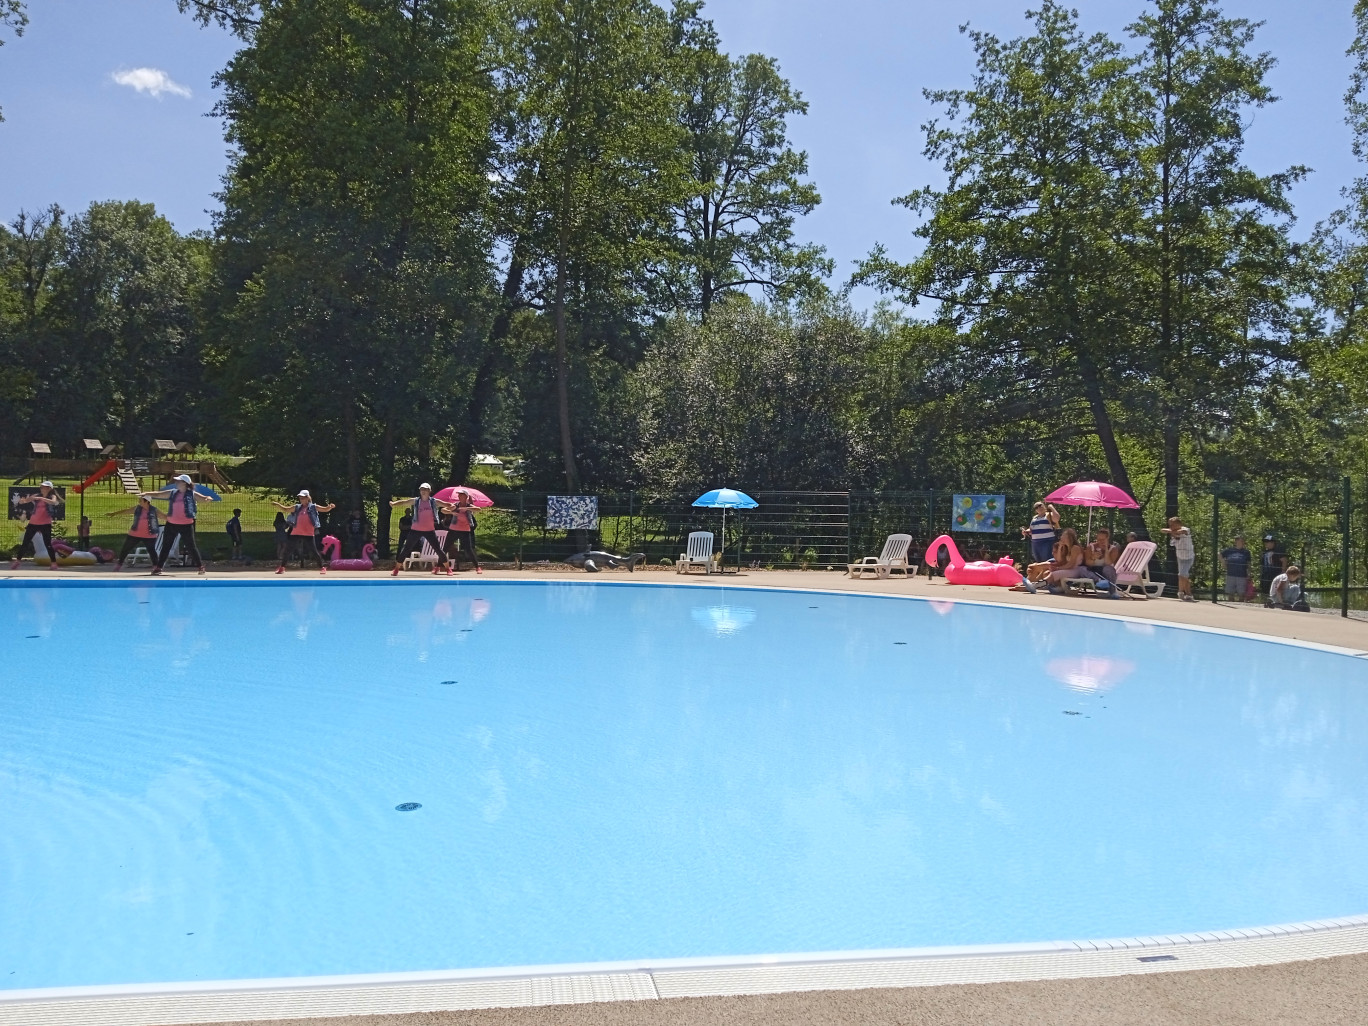 La piscine vient renforcer l’attractivité de la station touristique située au cœur de la forêt. 